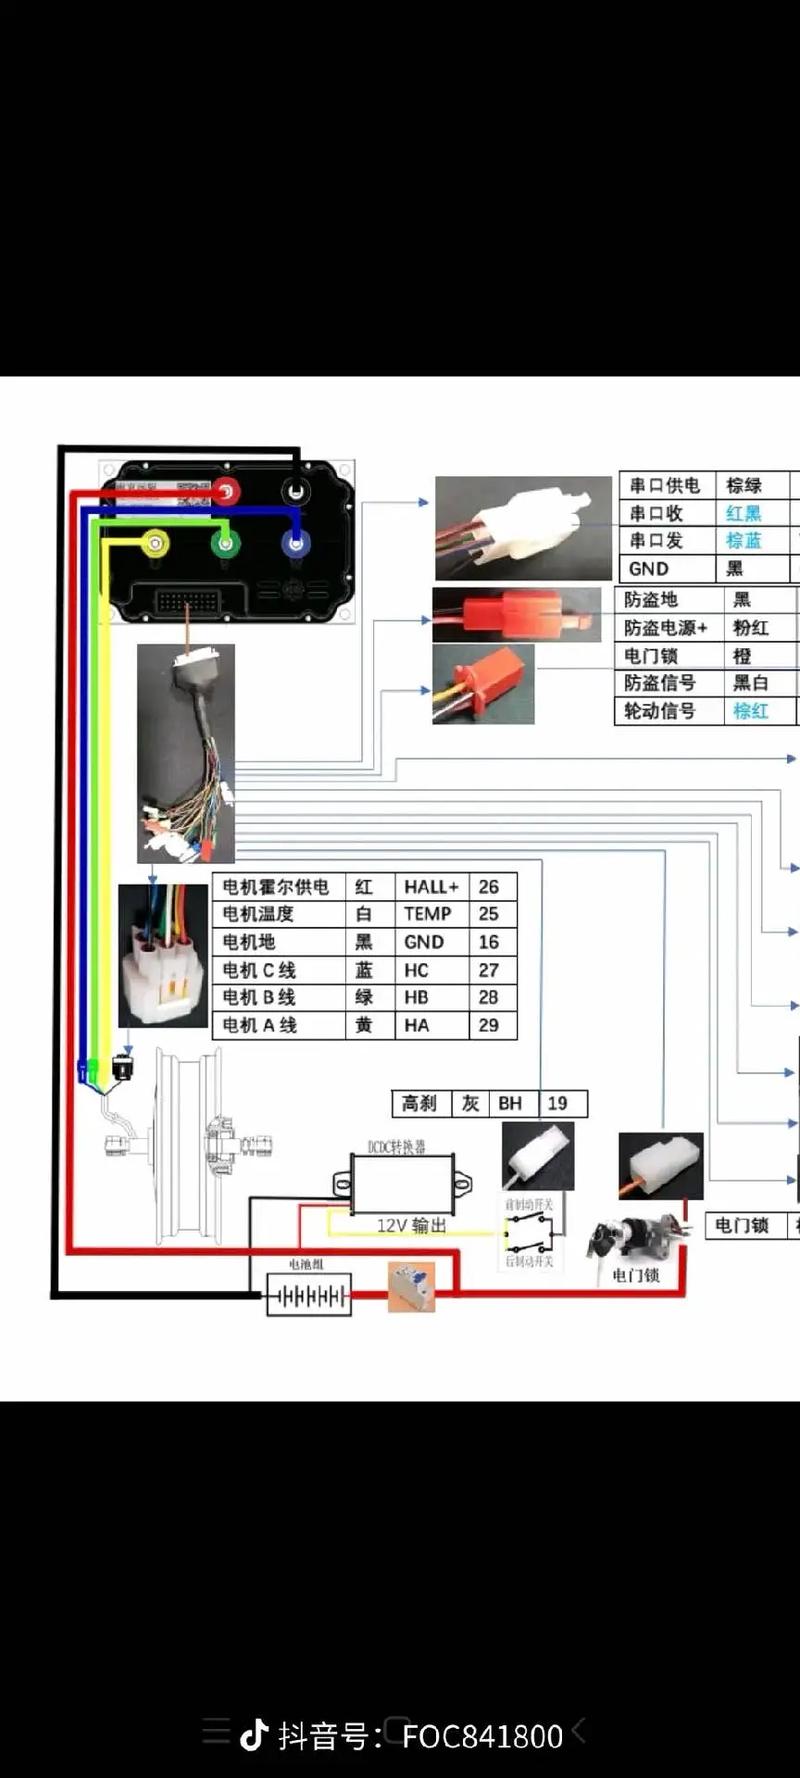 远驱常规系列控制器接线图,需要的朋友可以收藏#南京远驱  - 抖音